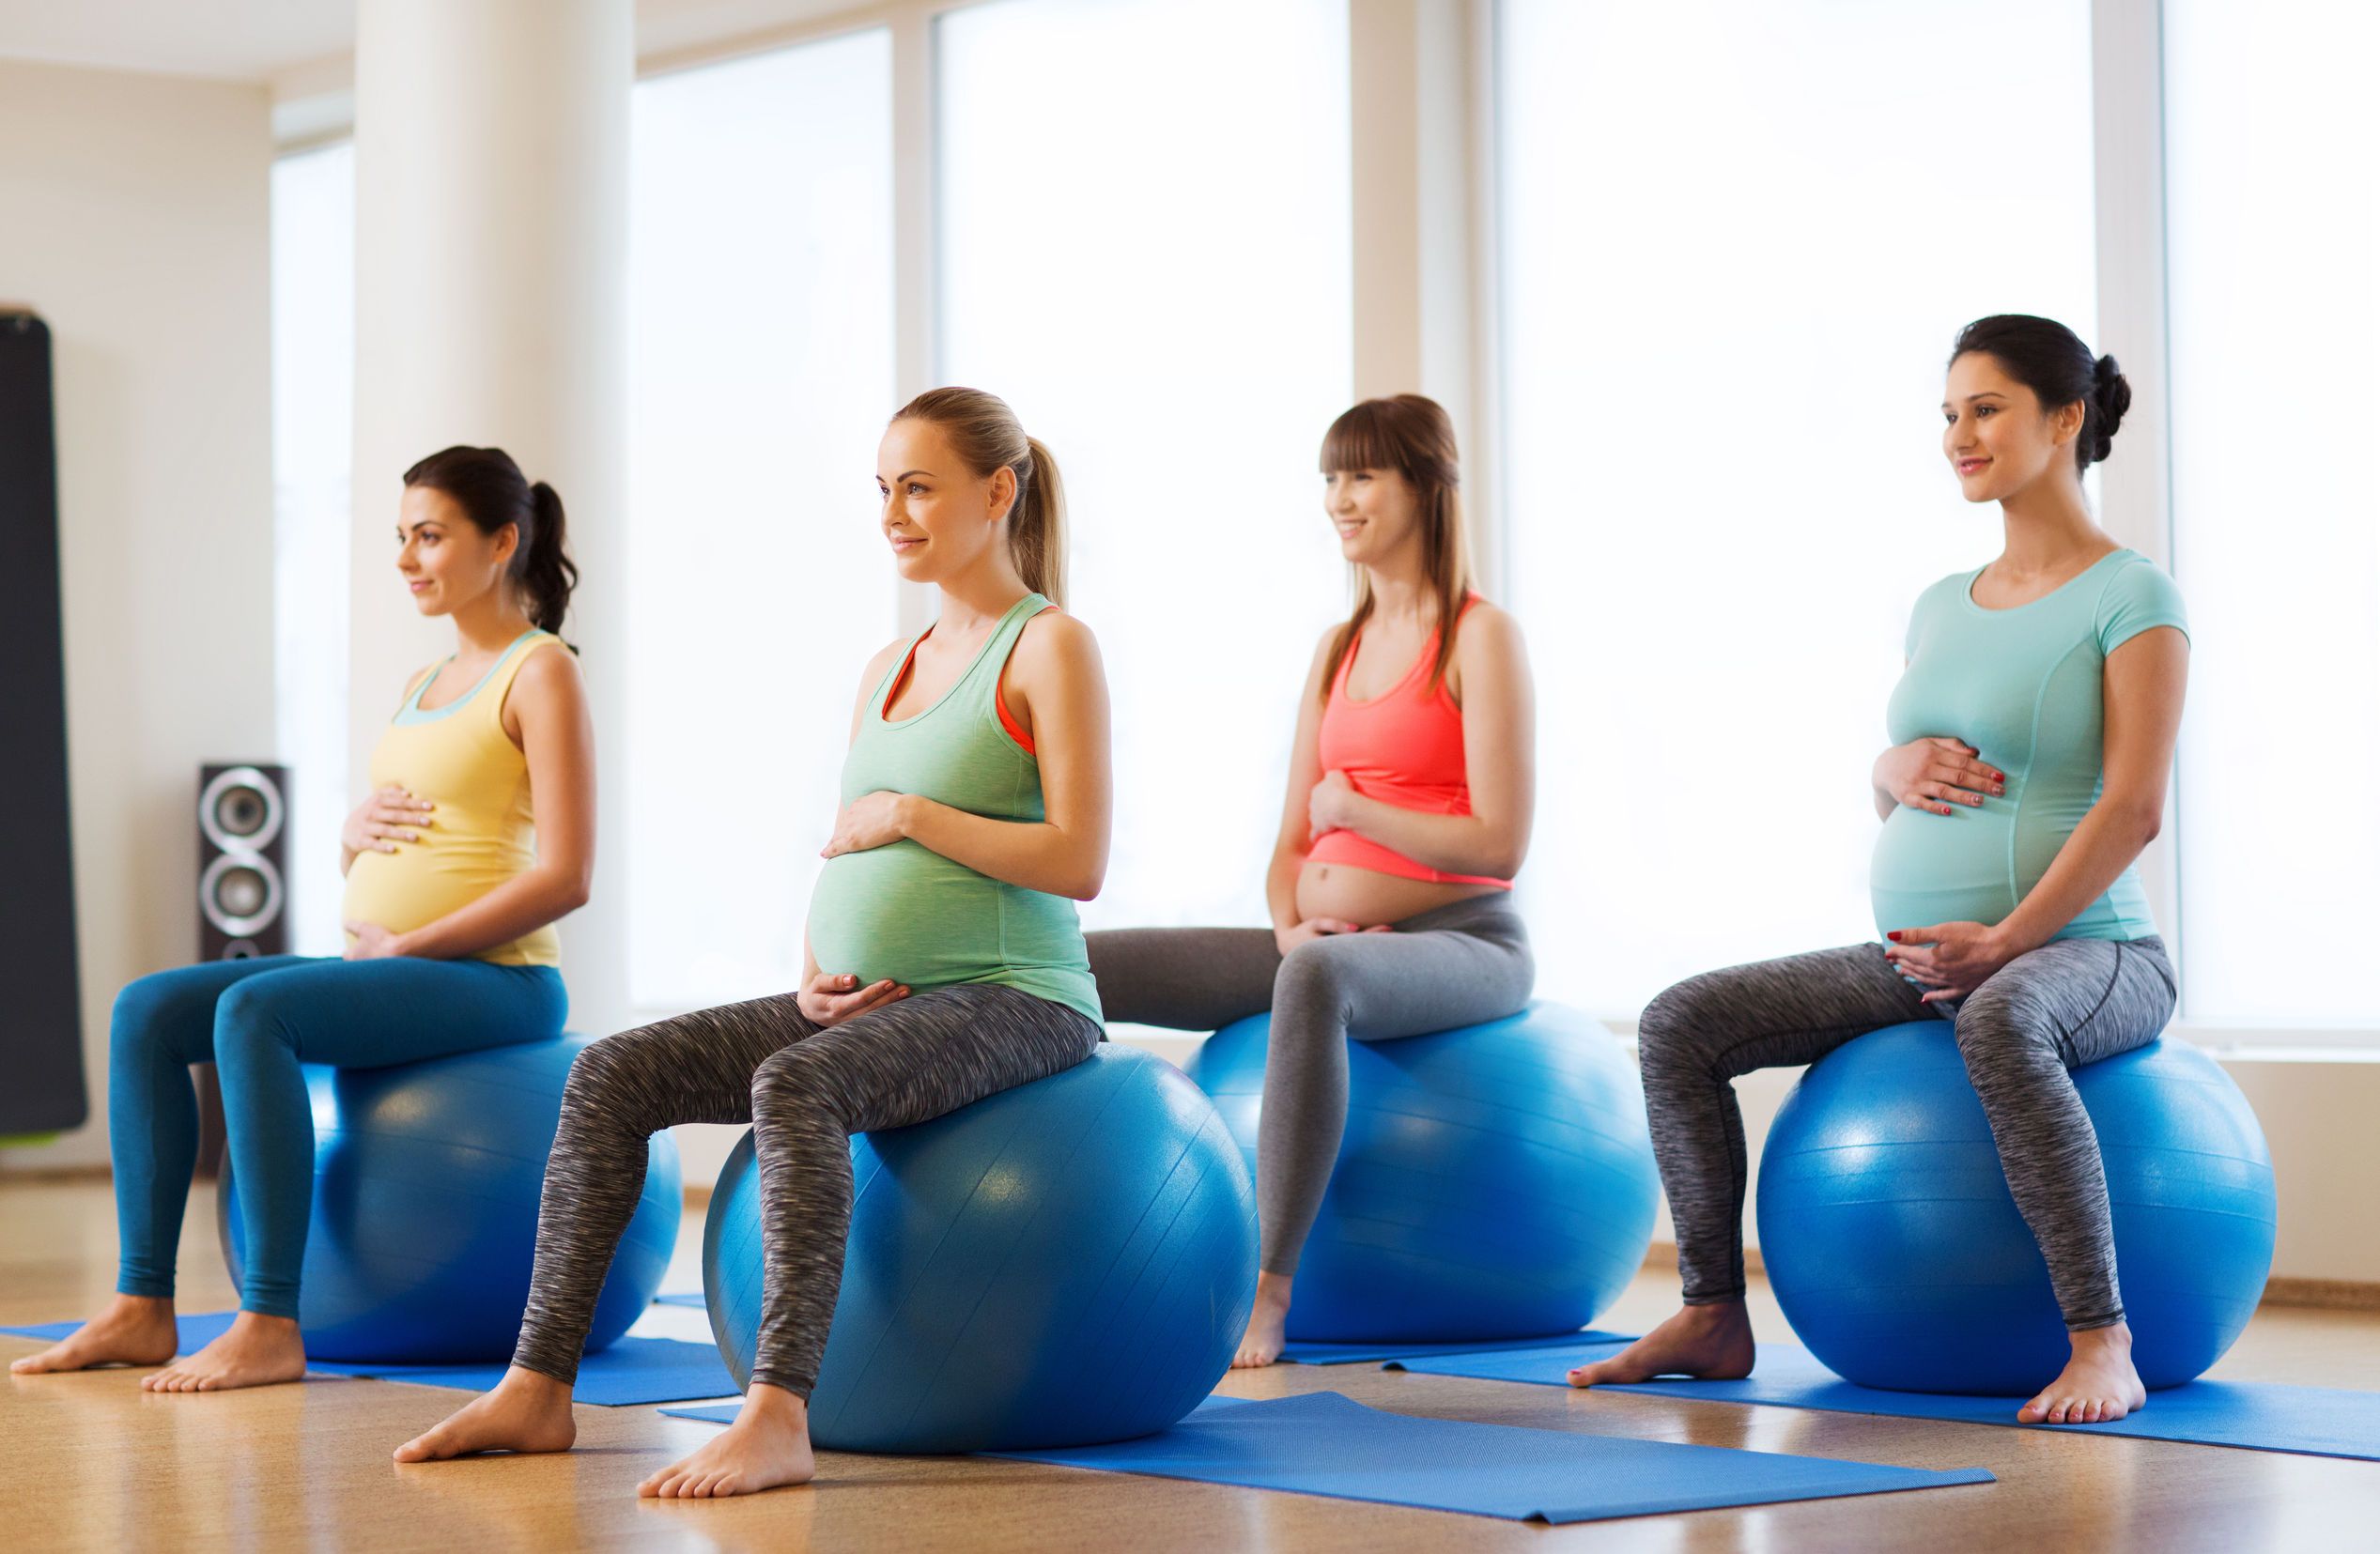 الرياضة للحامل | وما هي أفضل التمارين الرياضية للحامل ؟